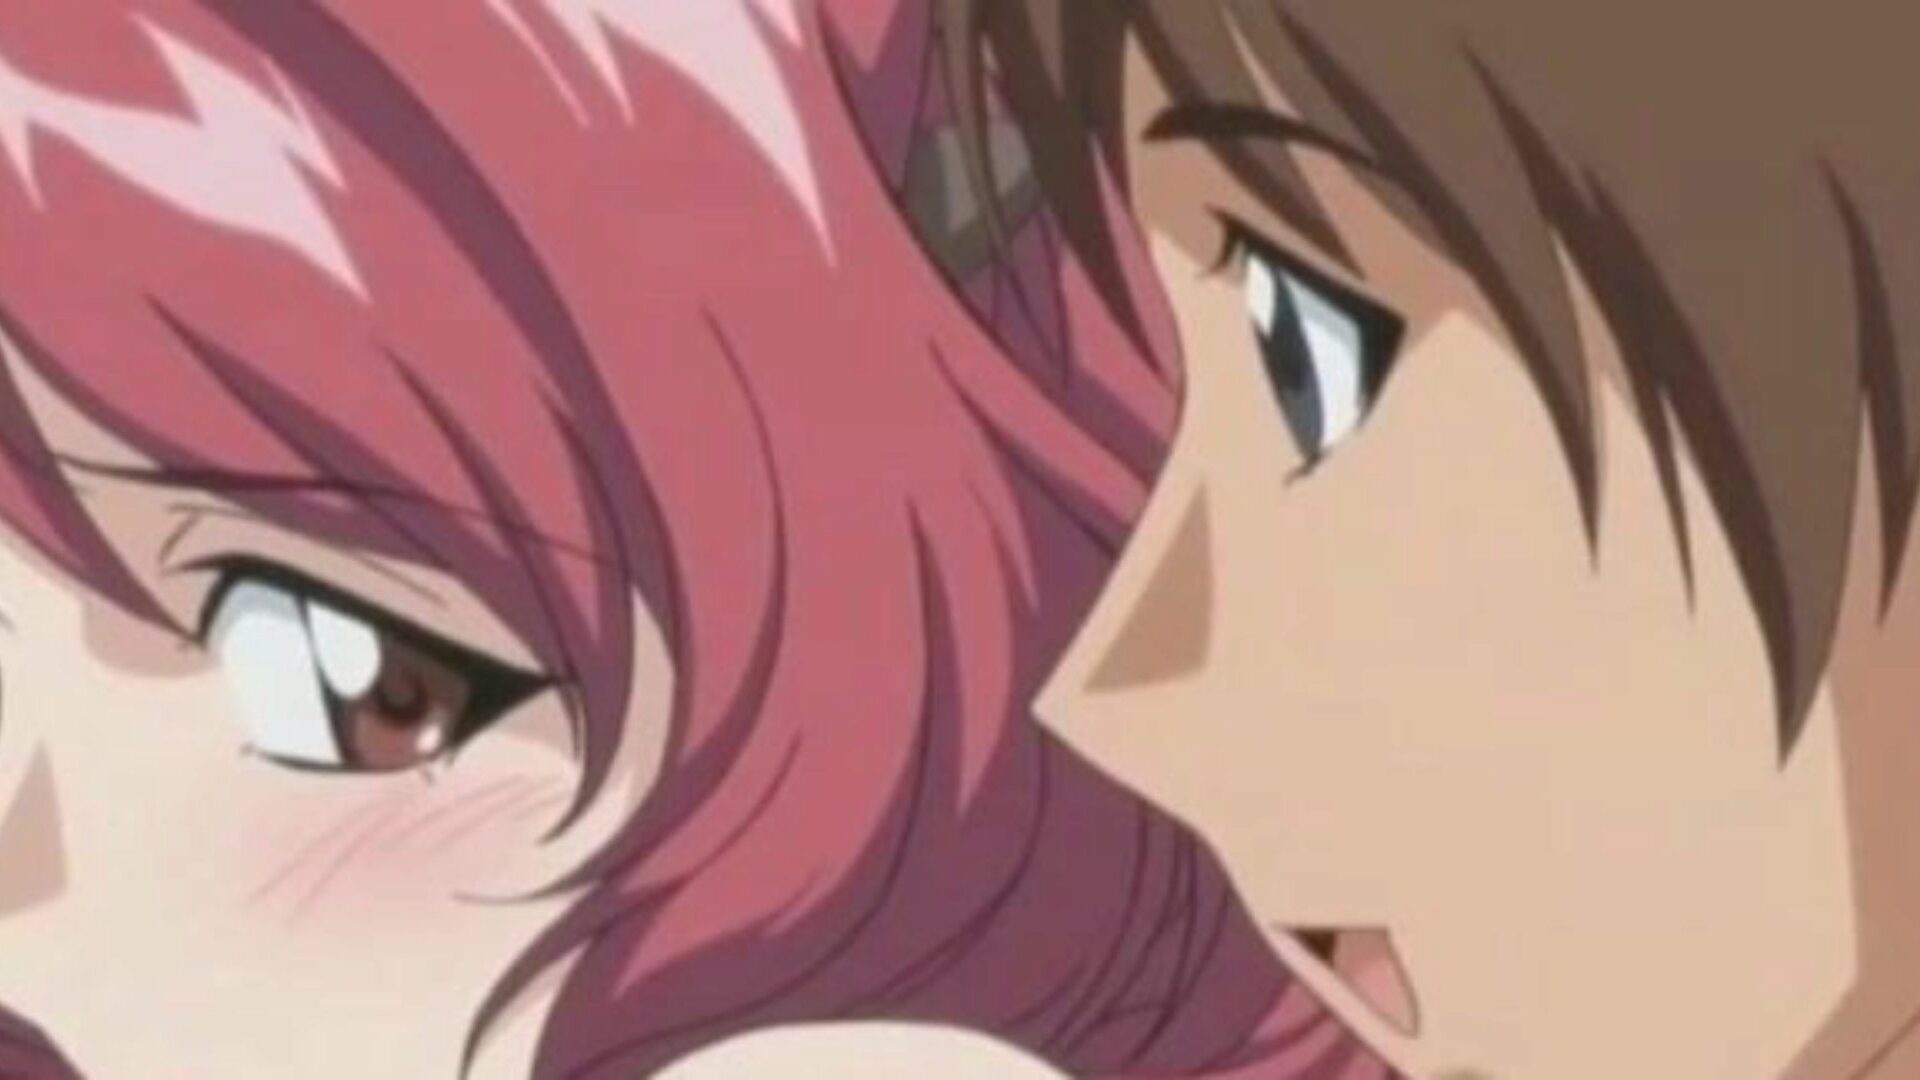 ljubavnik u zakonu 02 - rogonja na supružniku s njegovim bratom anime seks bez cenzure